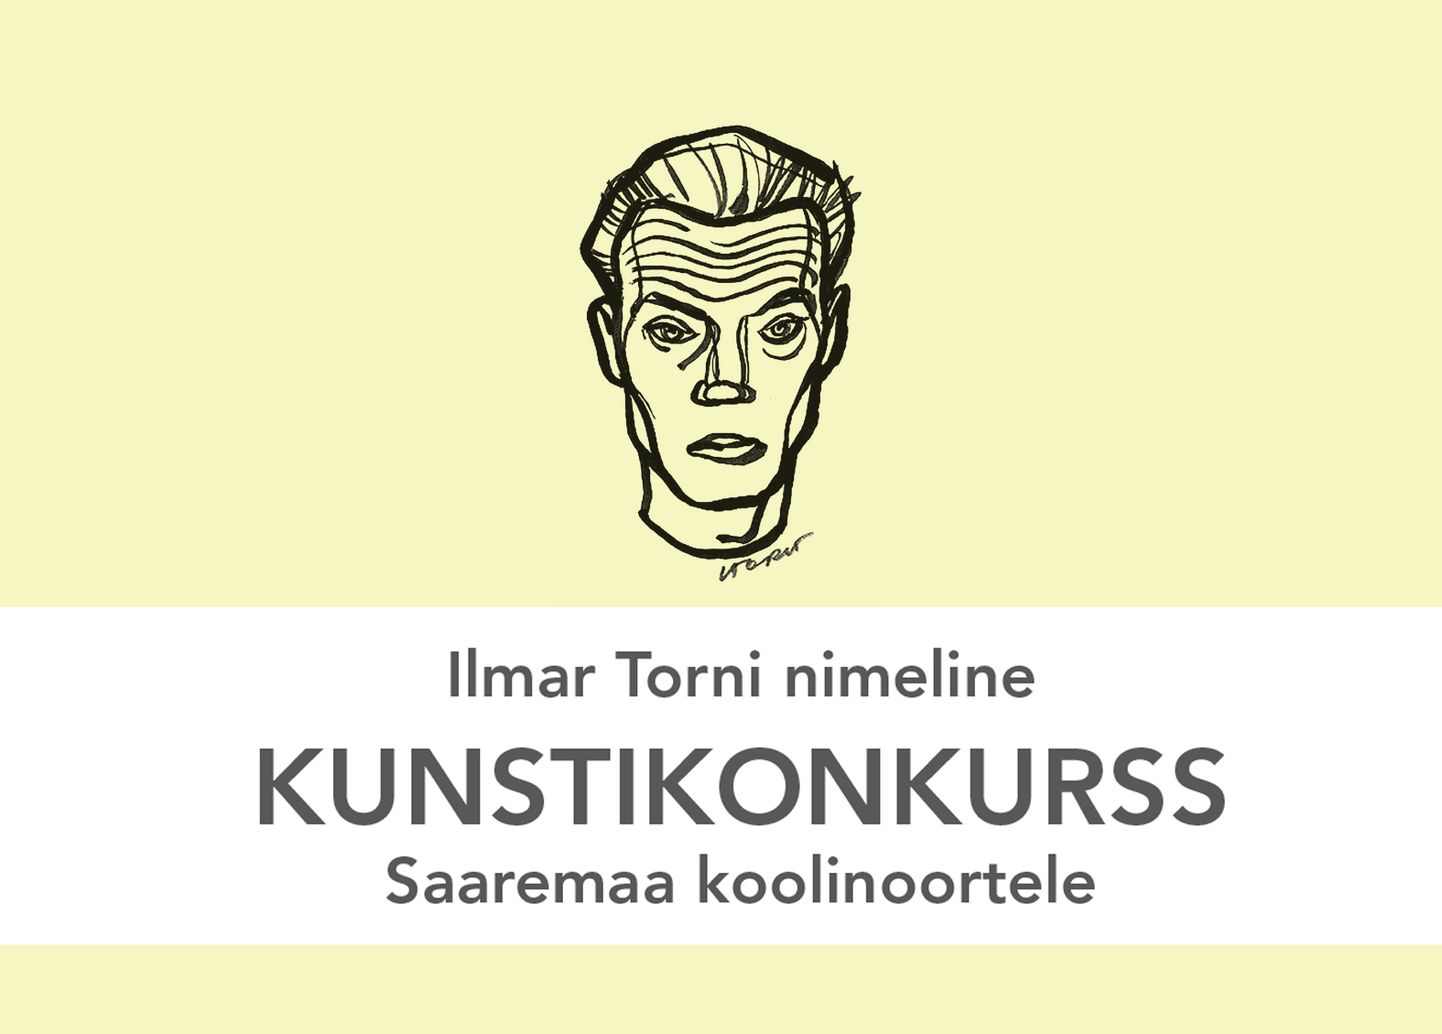 Ilmar Torni nimeline kunstikonkurss.